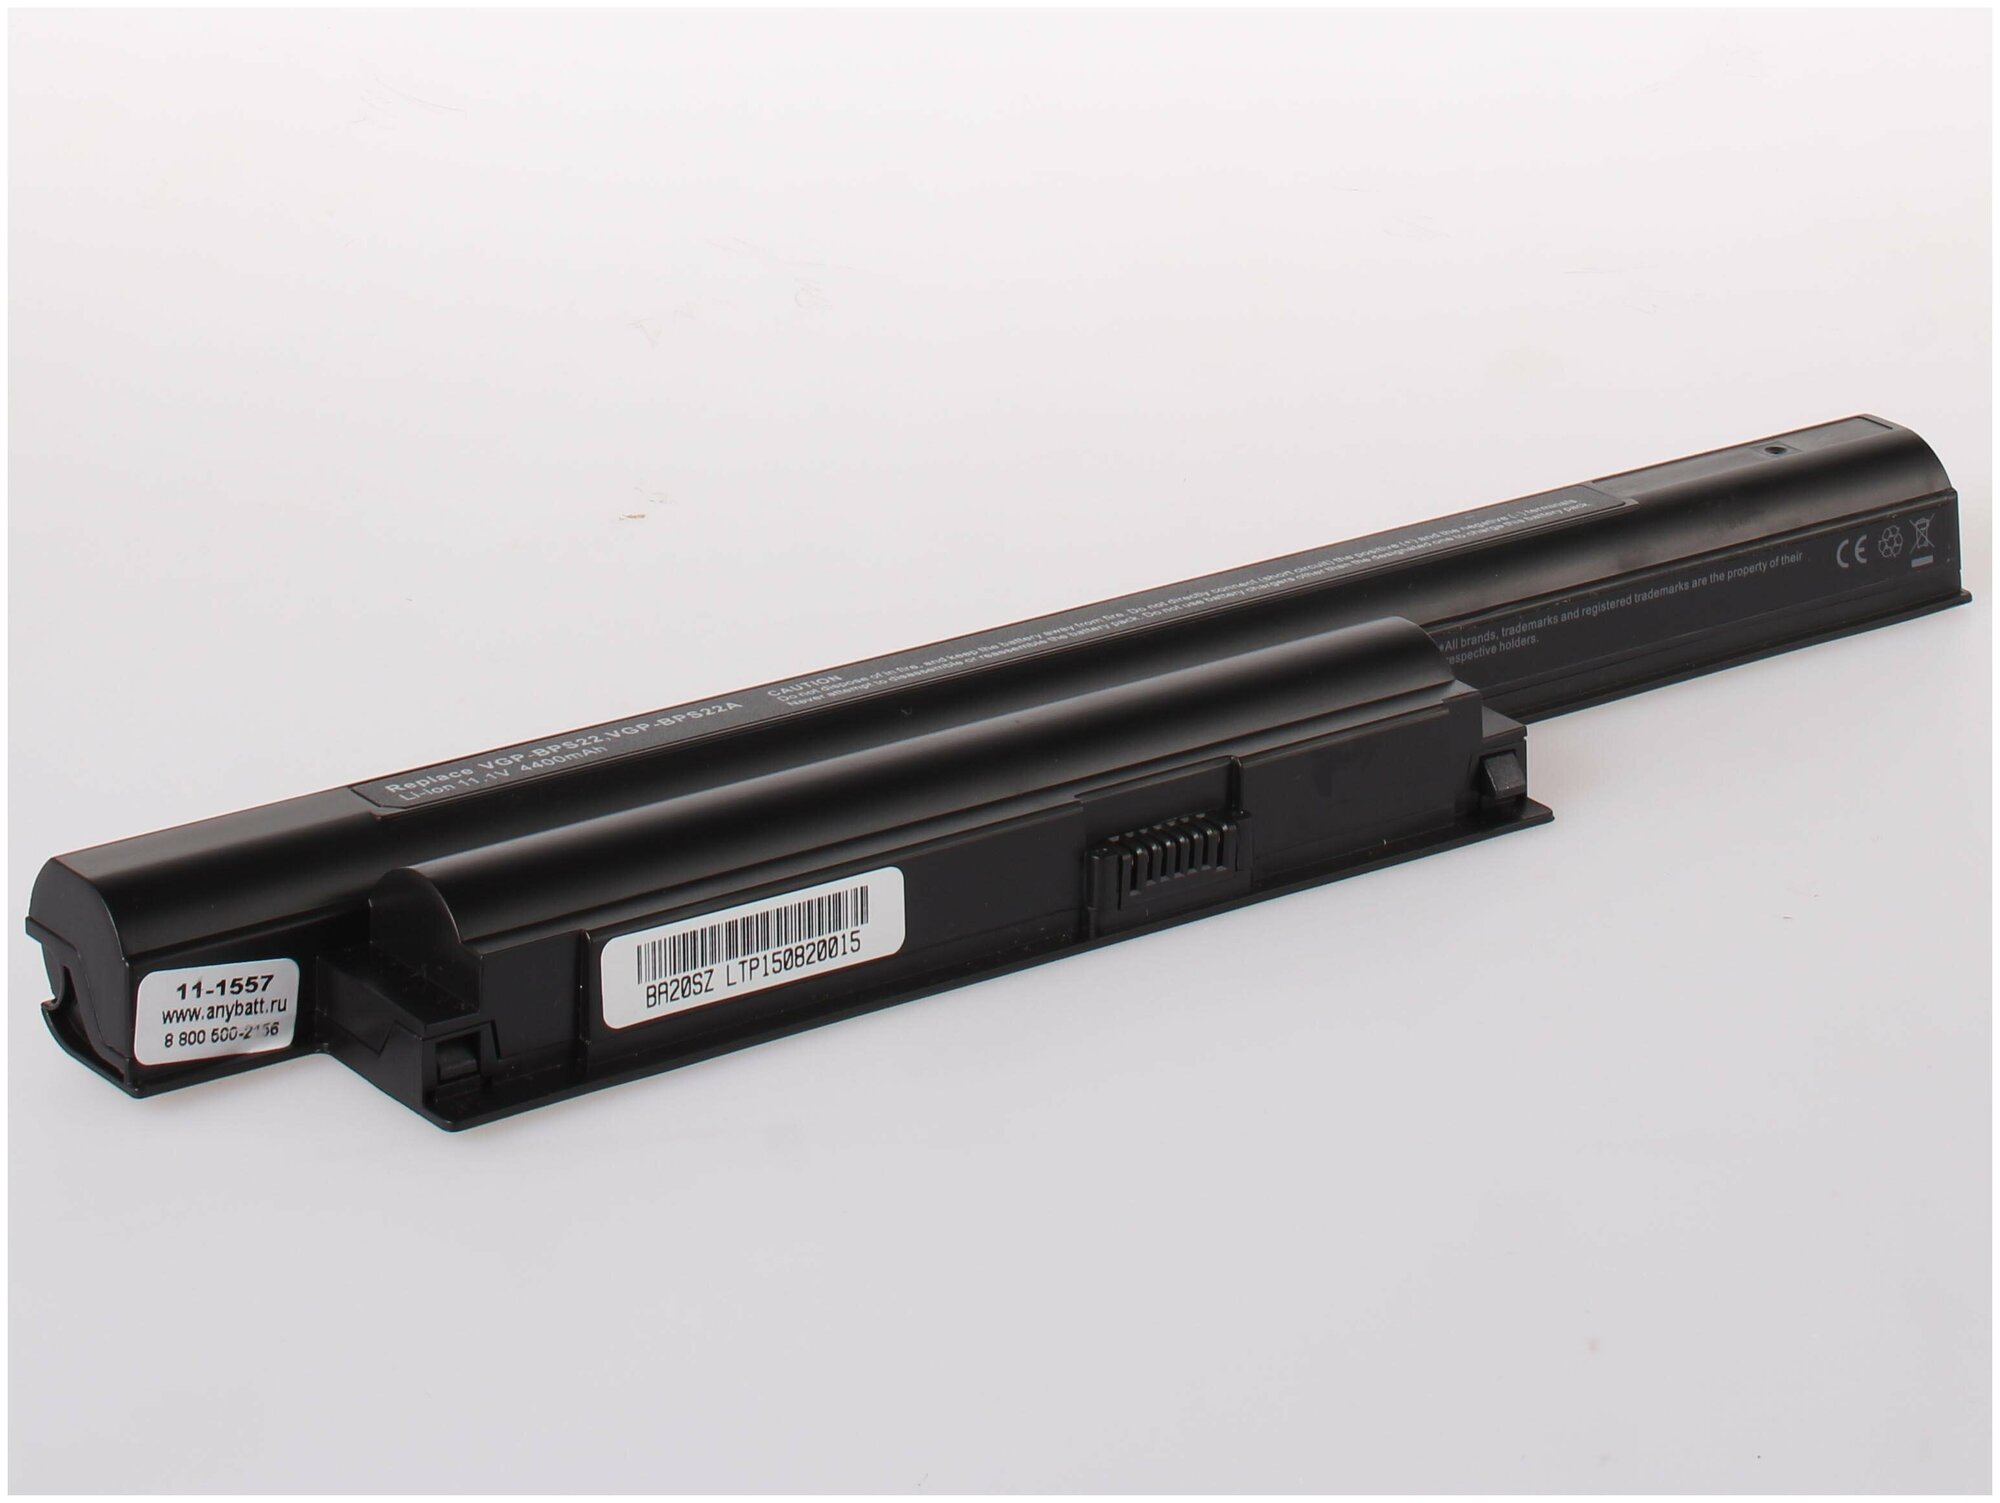 Аккумуляторная батарея Anybatt 11-B1-1557 4400mAh для ноутбуков Sony VGP-BPS22, VGP-BPS22A,